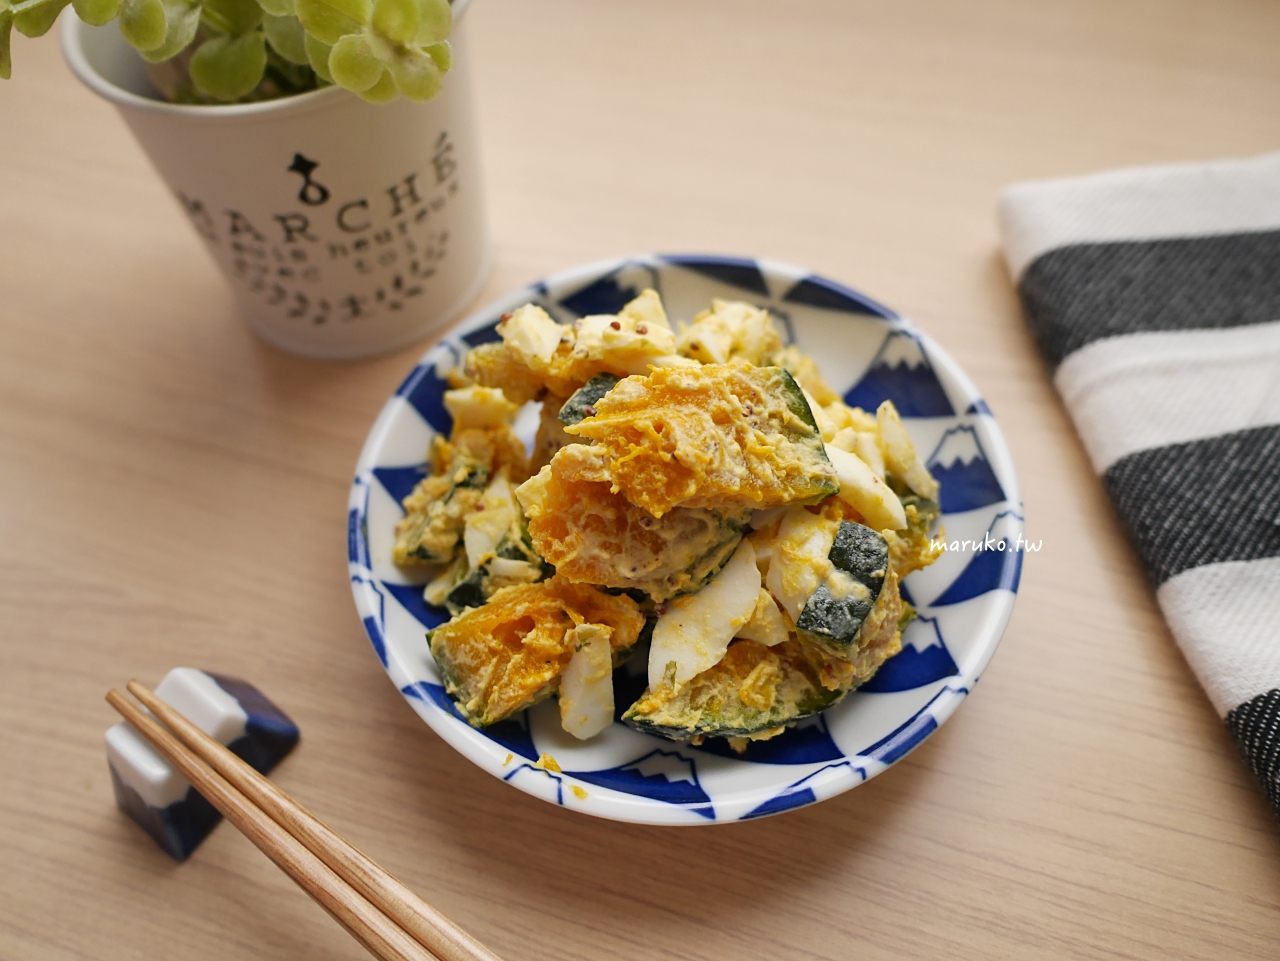 【食譜】栗子南瓜沙拉 10分鐘上菜系列-適合夏天的清爽日式常備菜